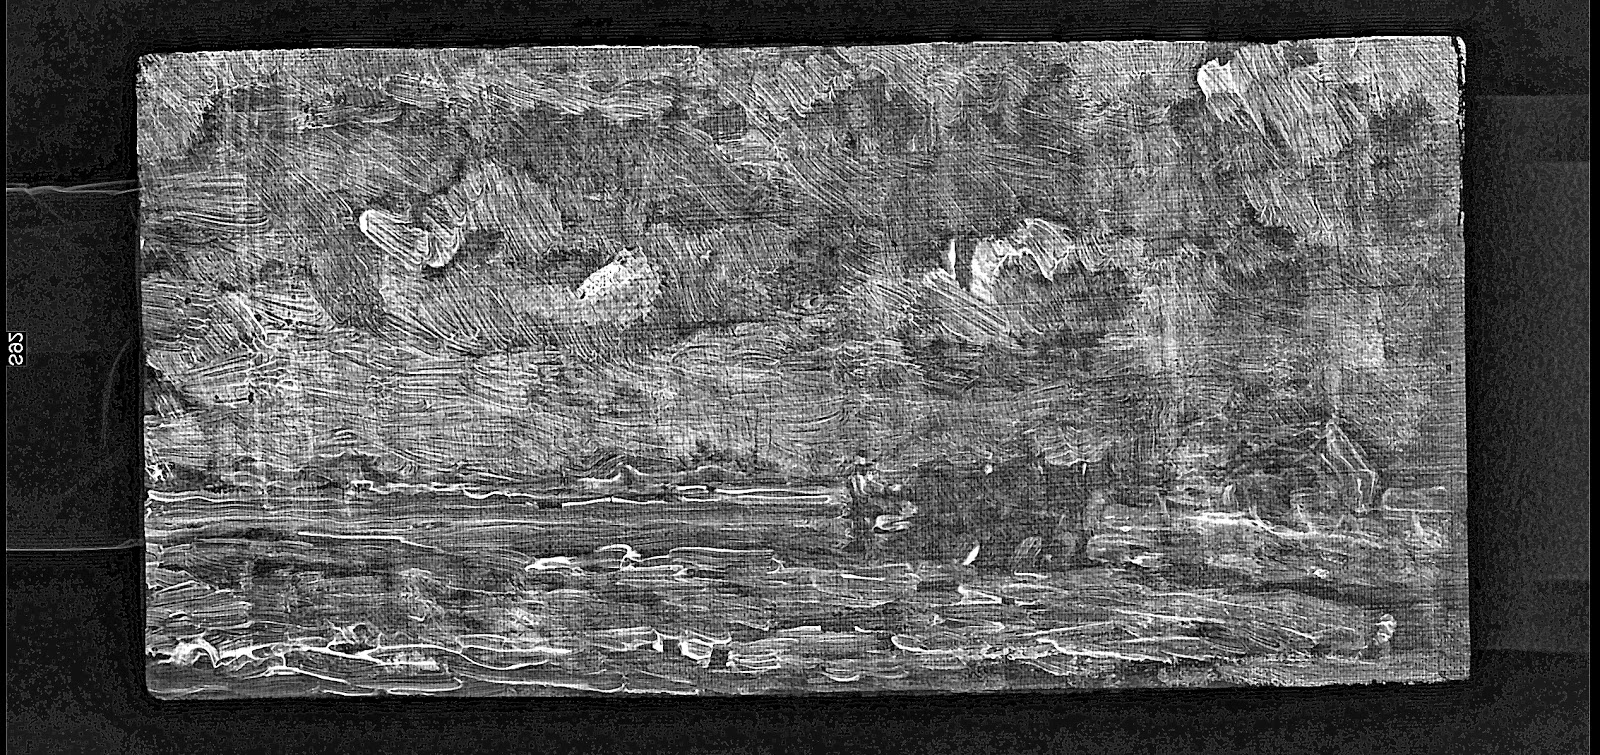 Vincent van Gogh Landscape with Ploughman digital RTG xray photograph